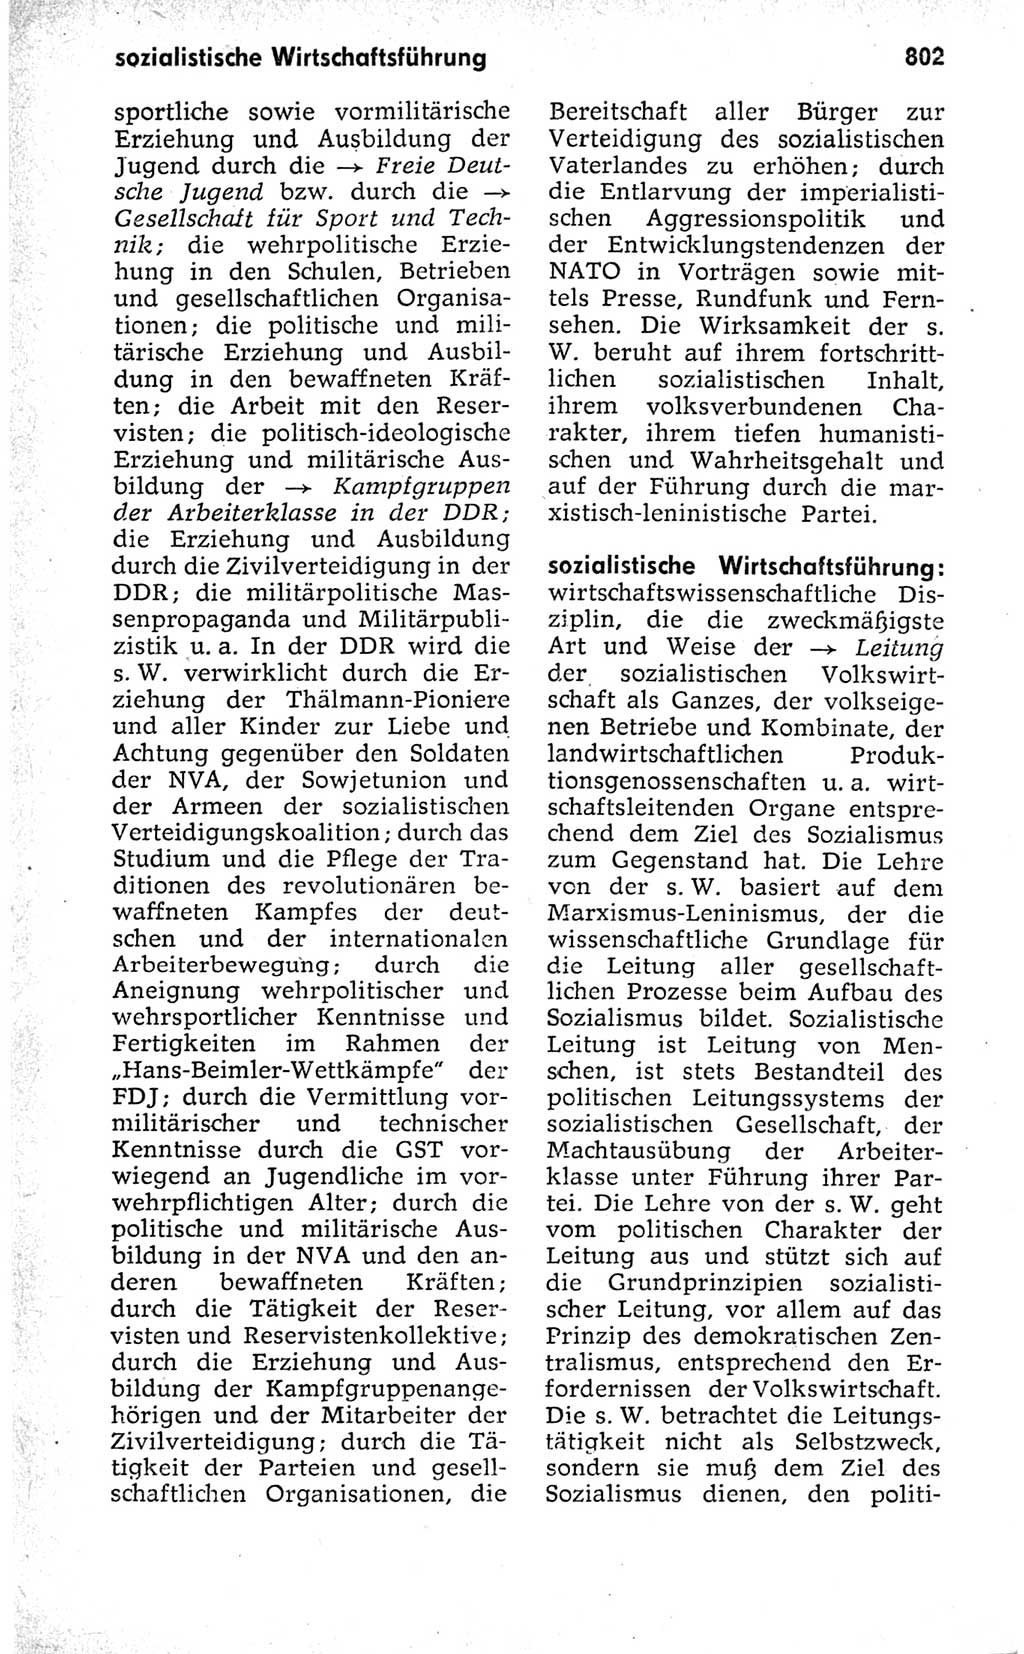 Kleines politisches Wörterbuch [Deutsche Demokratische Republik (DDR)] 1973, Seite 802 (Kl. pol. Wb. DDR 1973, S. 802)